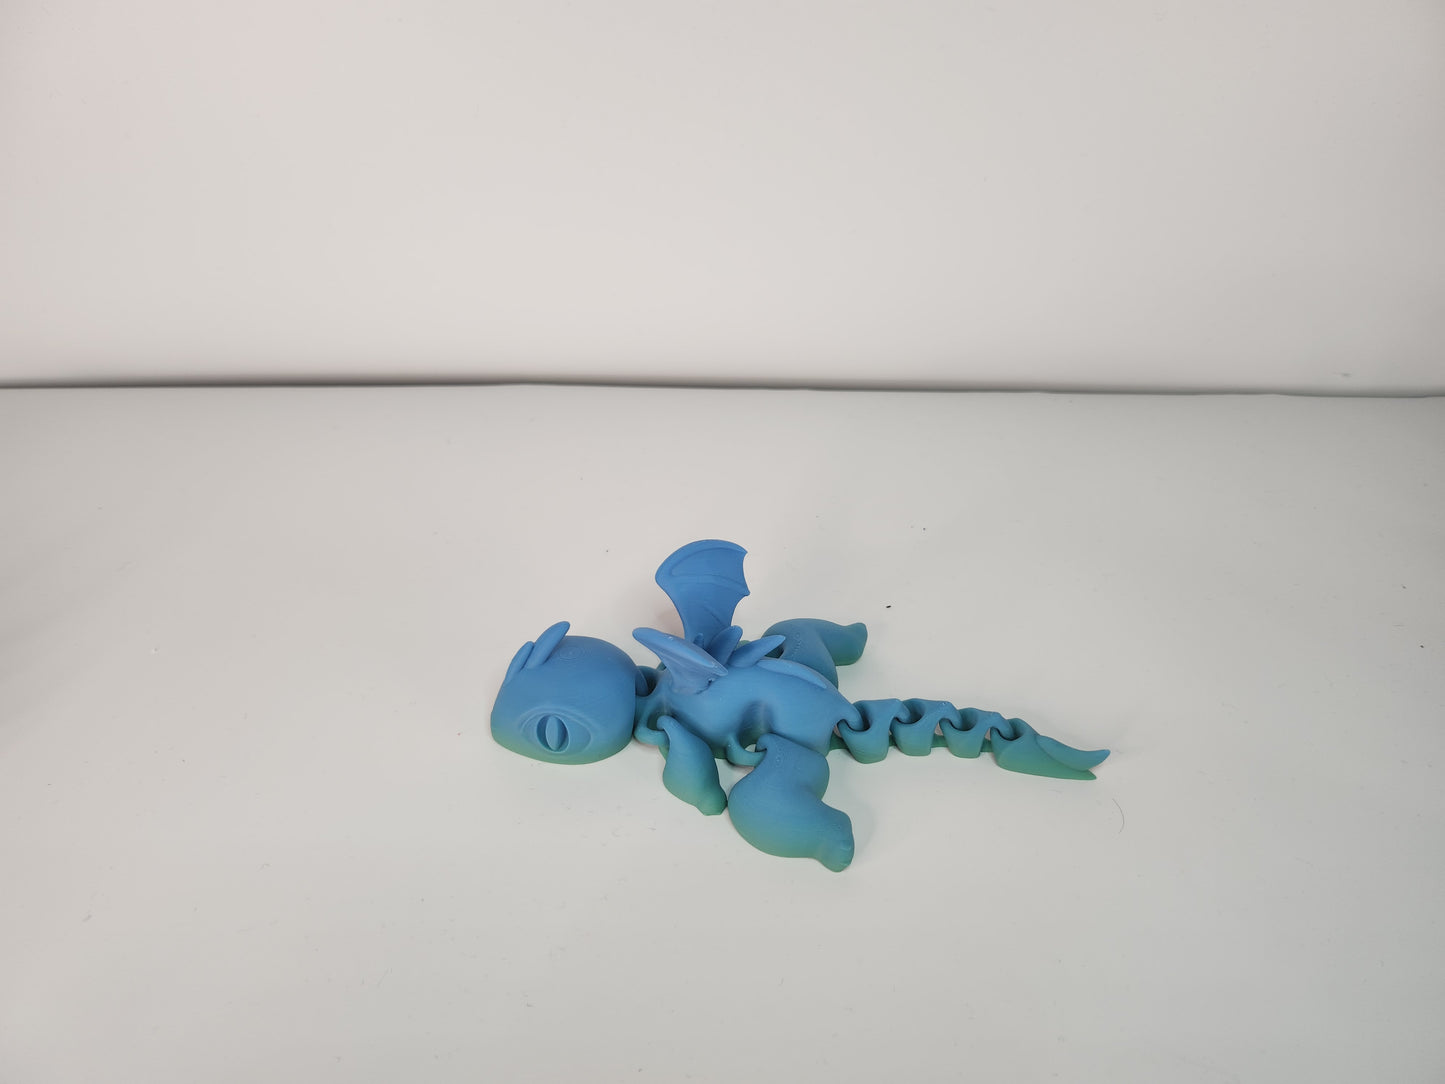 3D Printed Dragons